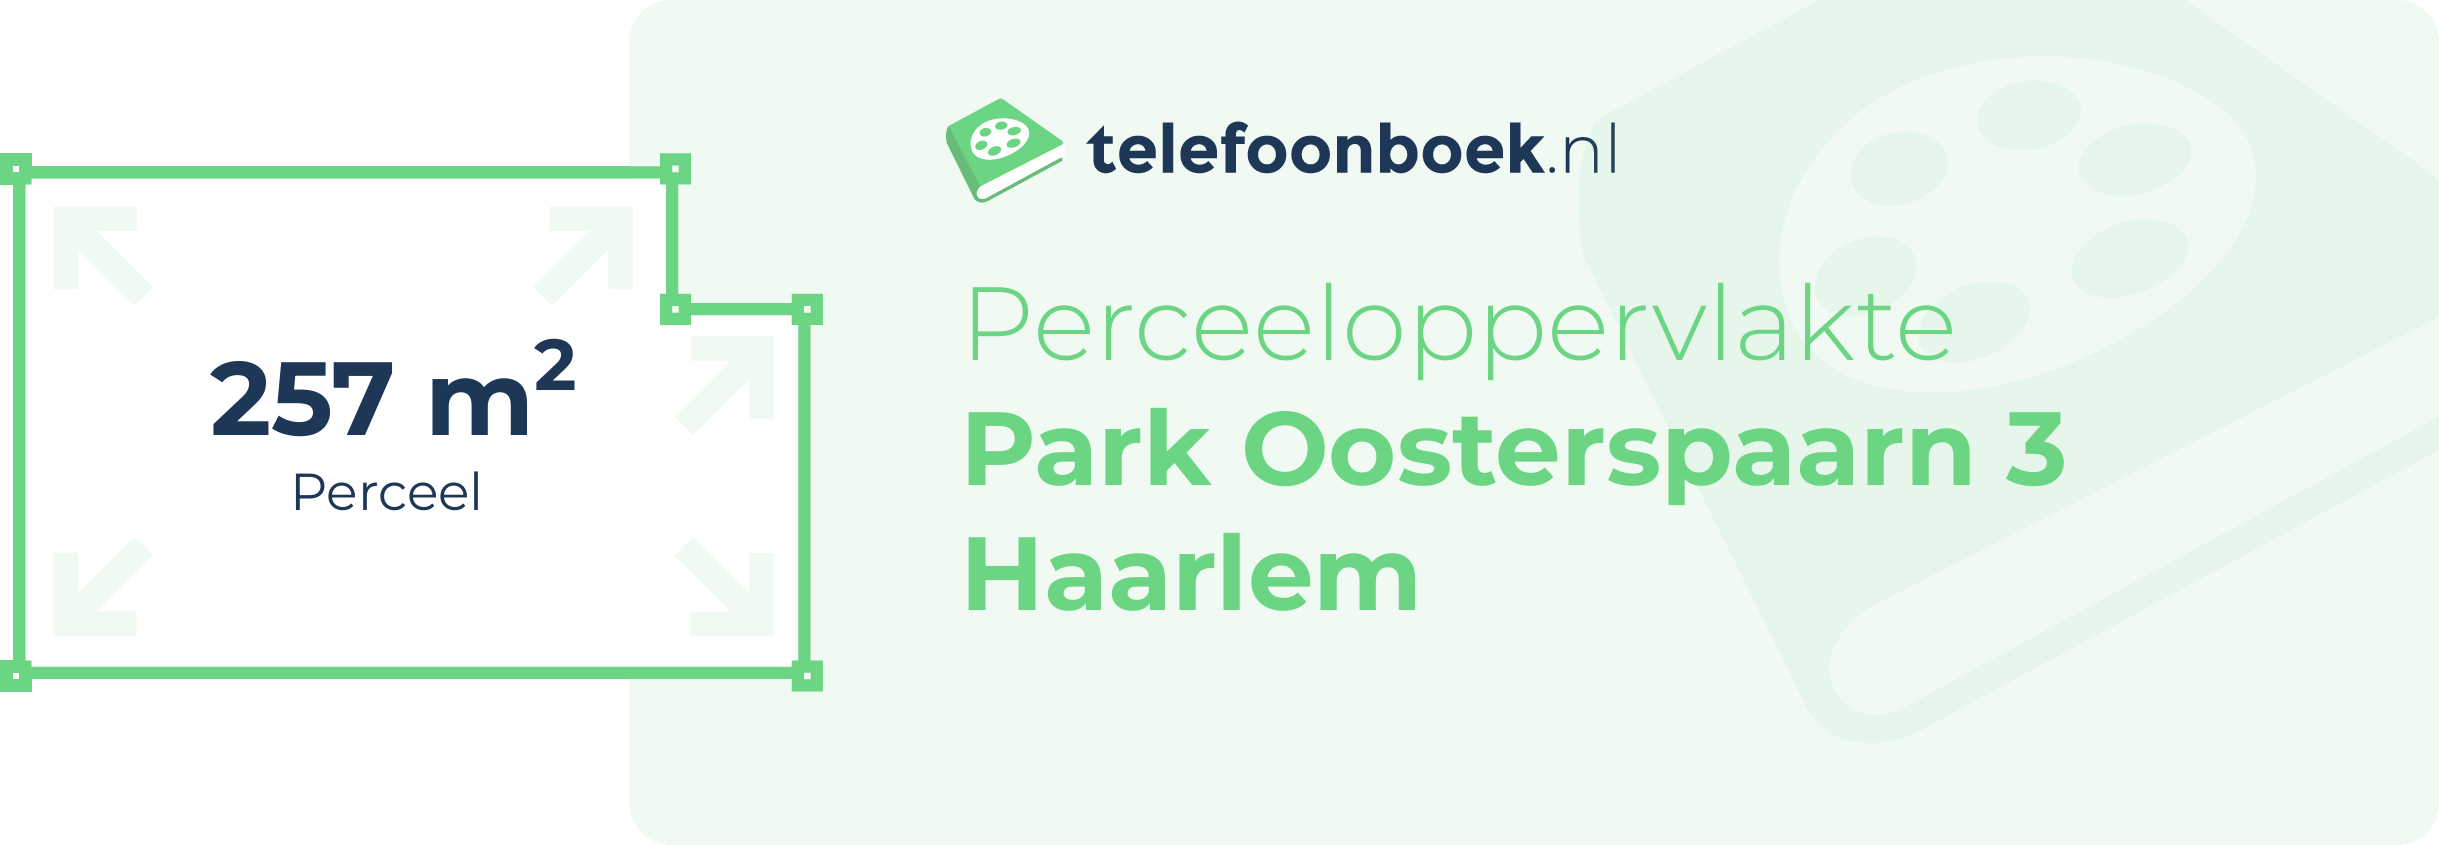 Perceeloppervlakte Park Oosterspaarn 3 Haarlem